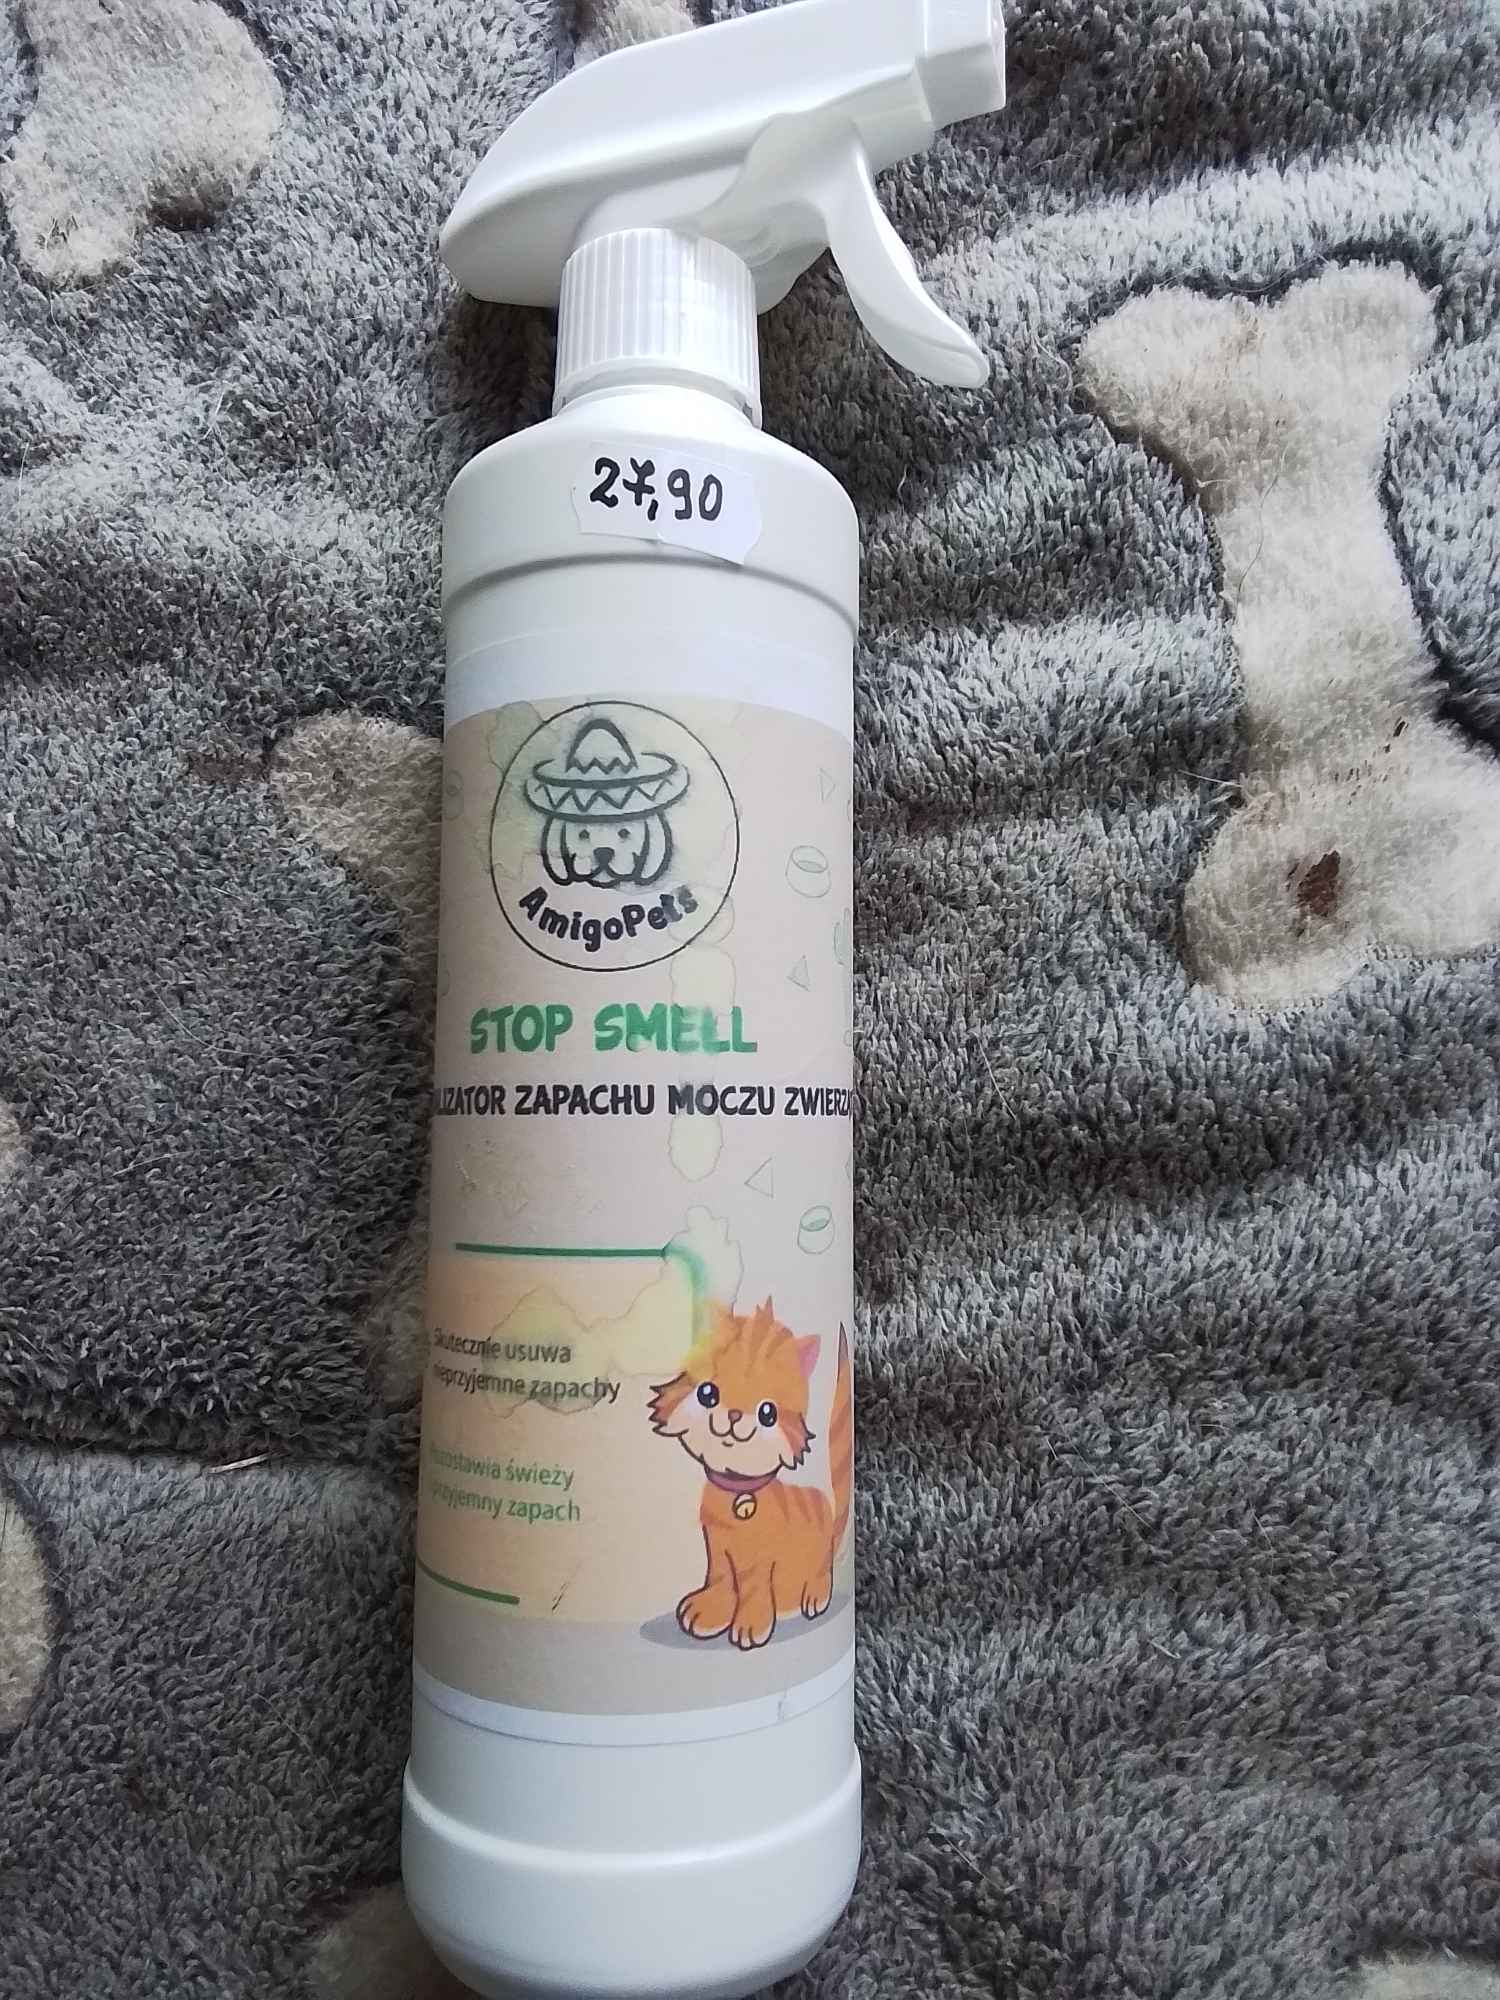 Neutralizator zapachu moczu dla psów I kotów*AmigoPets-Stop Smell* Katowice - zdjęcie 1